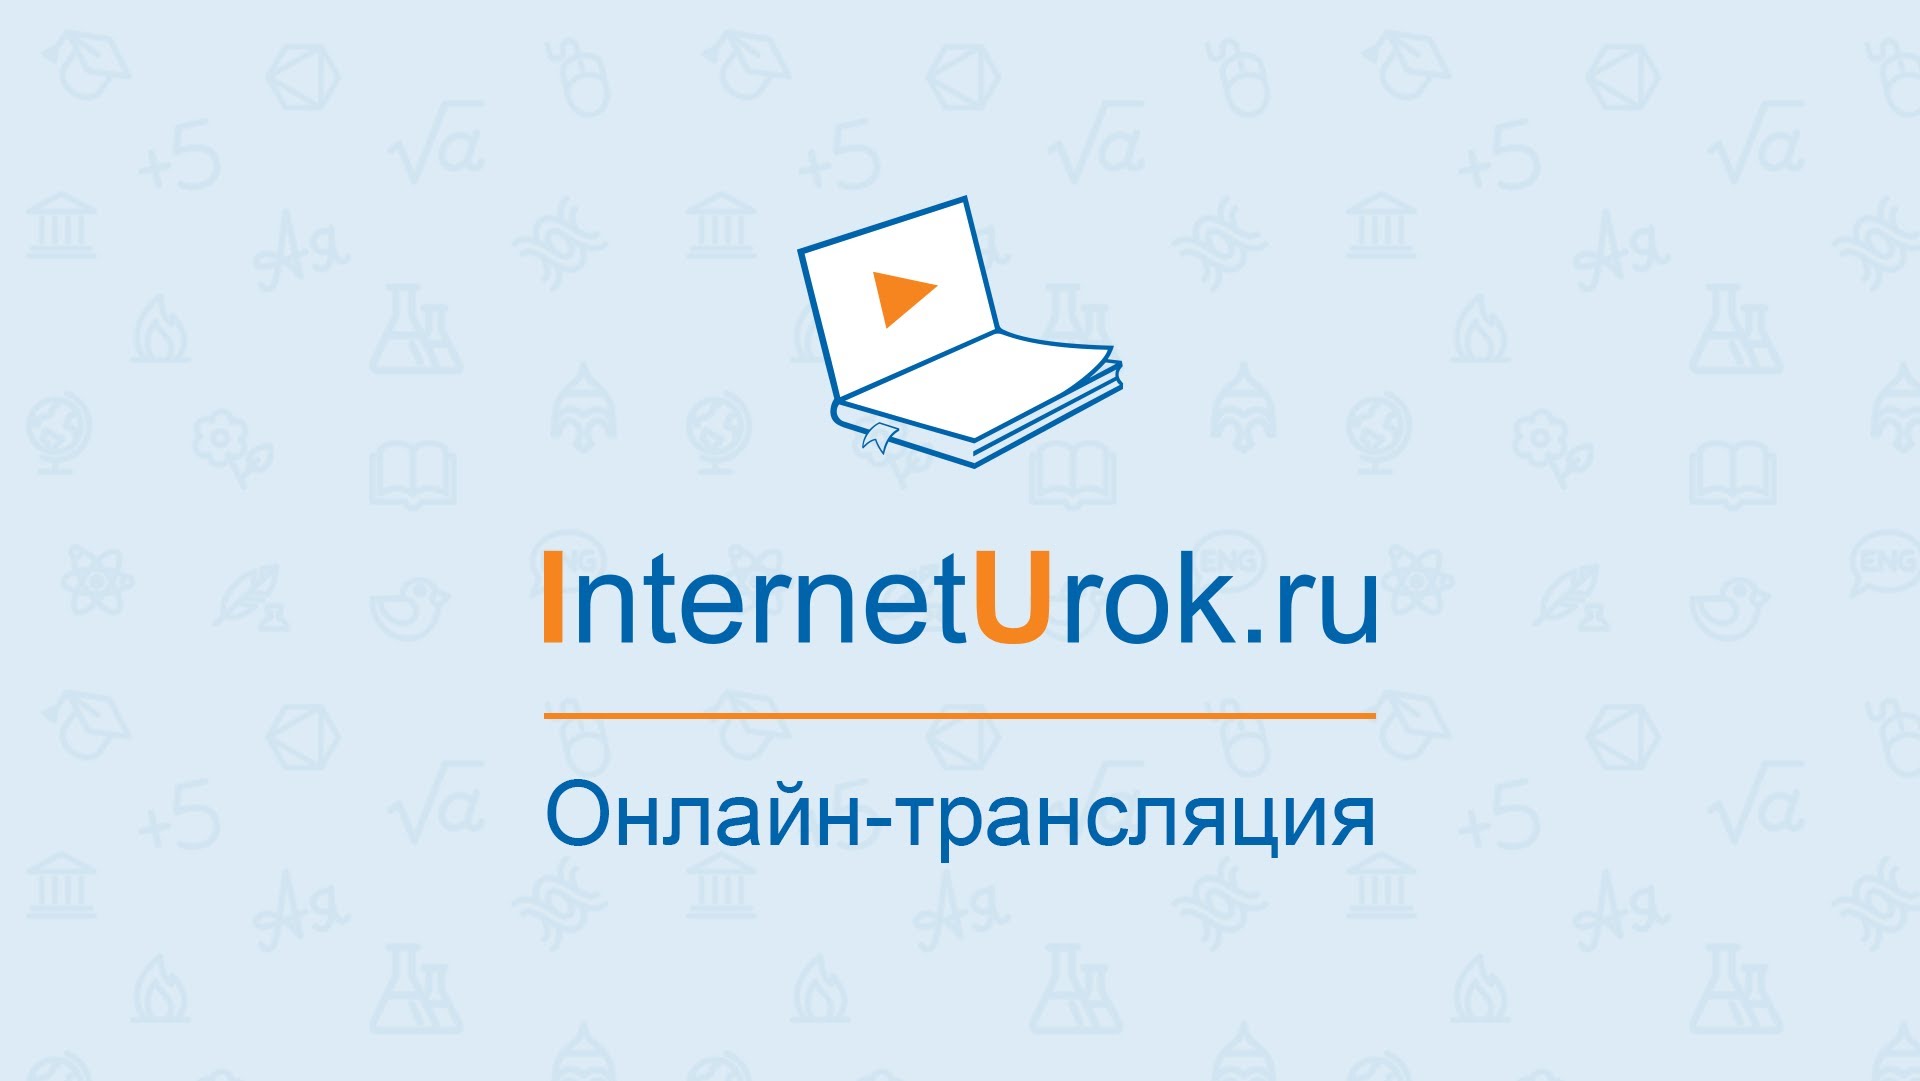 Interneturok ru 5